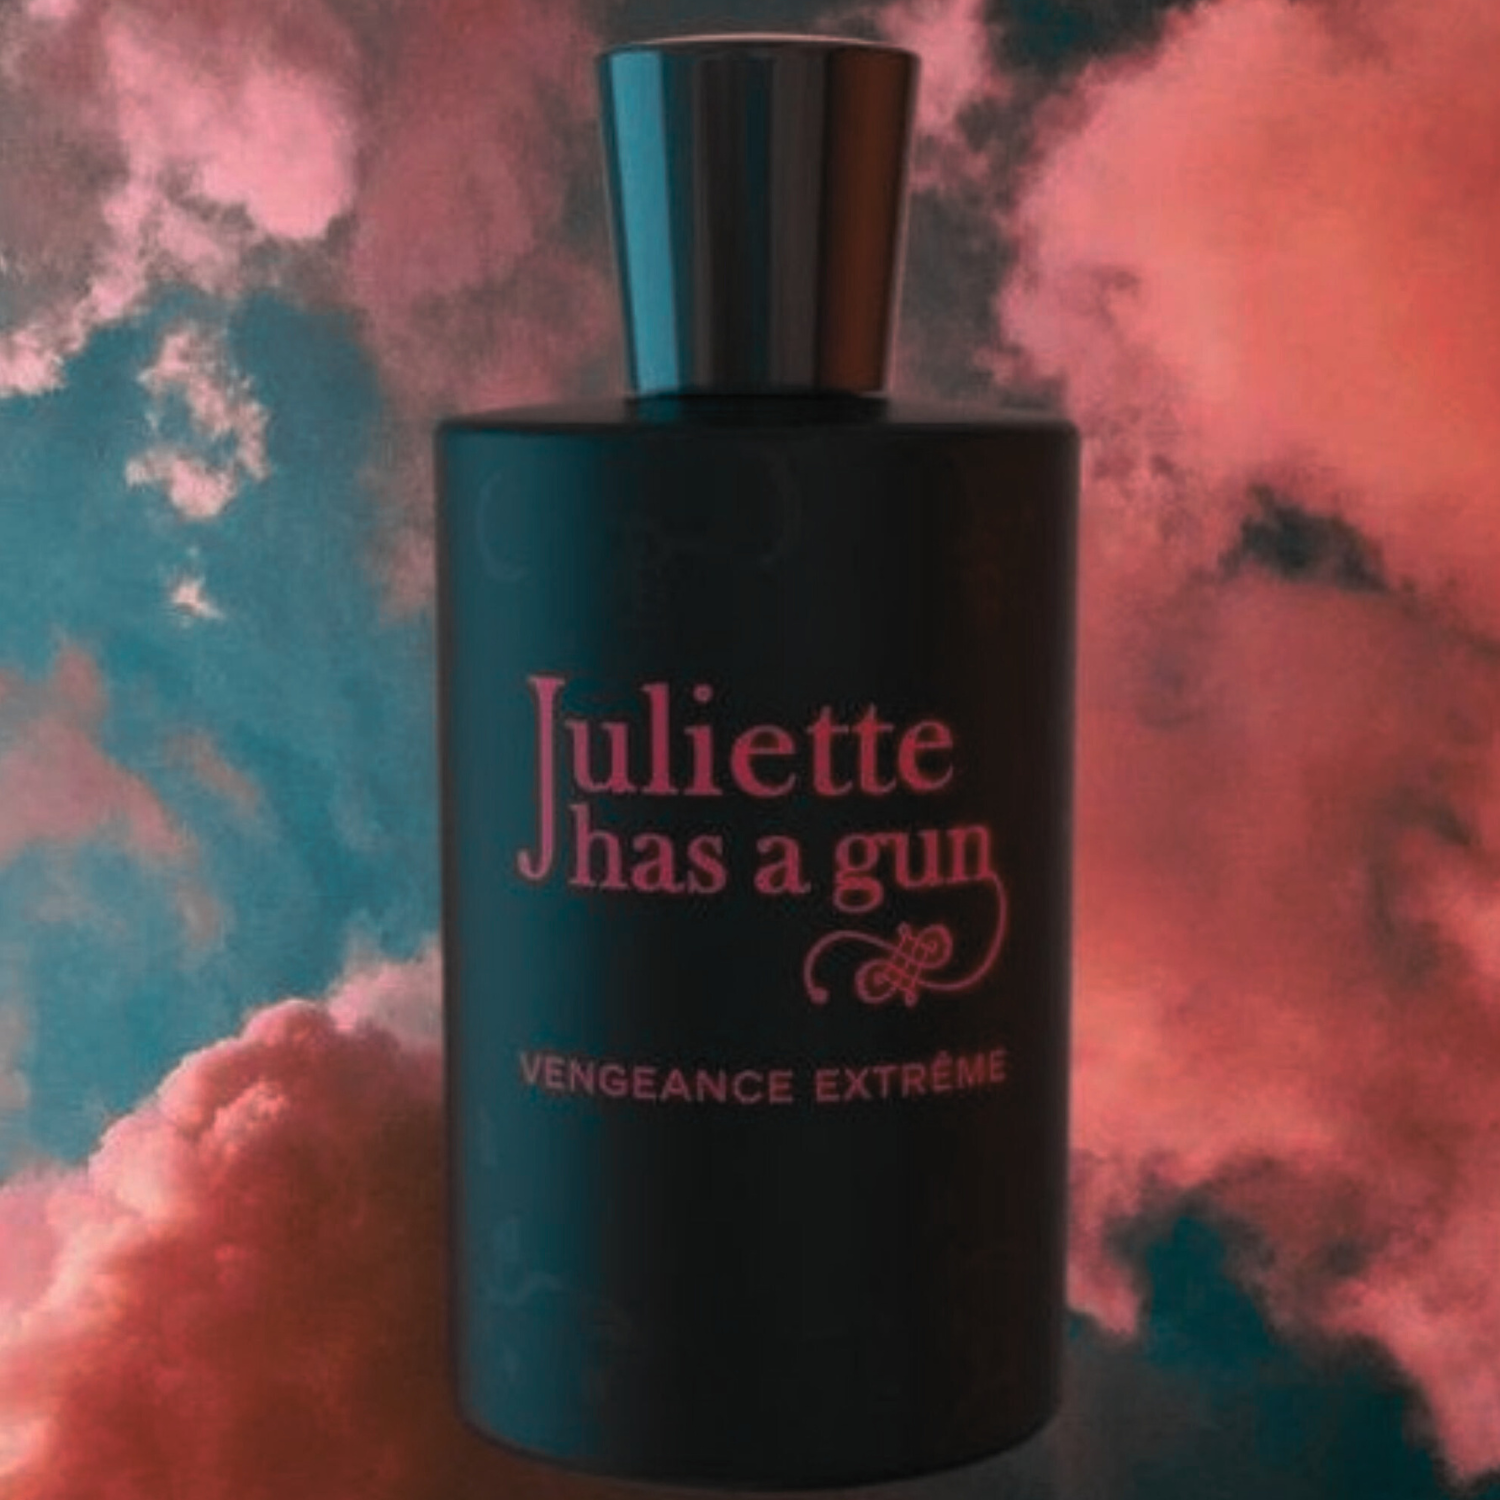 Vengeance Extreme, Shop Juliette Has a Gun Online